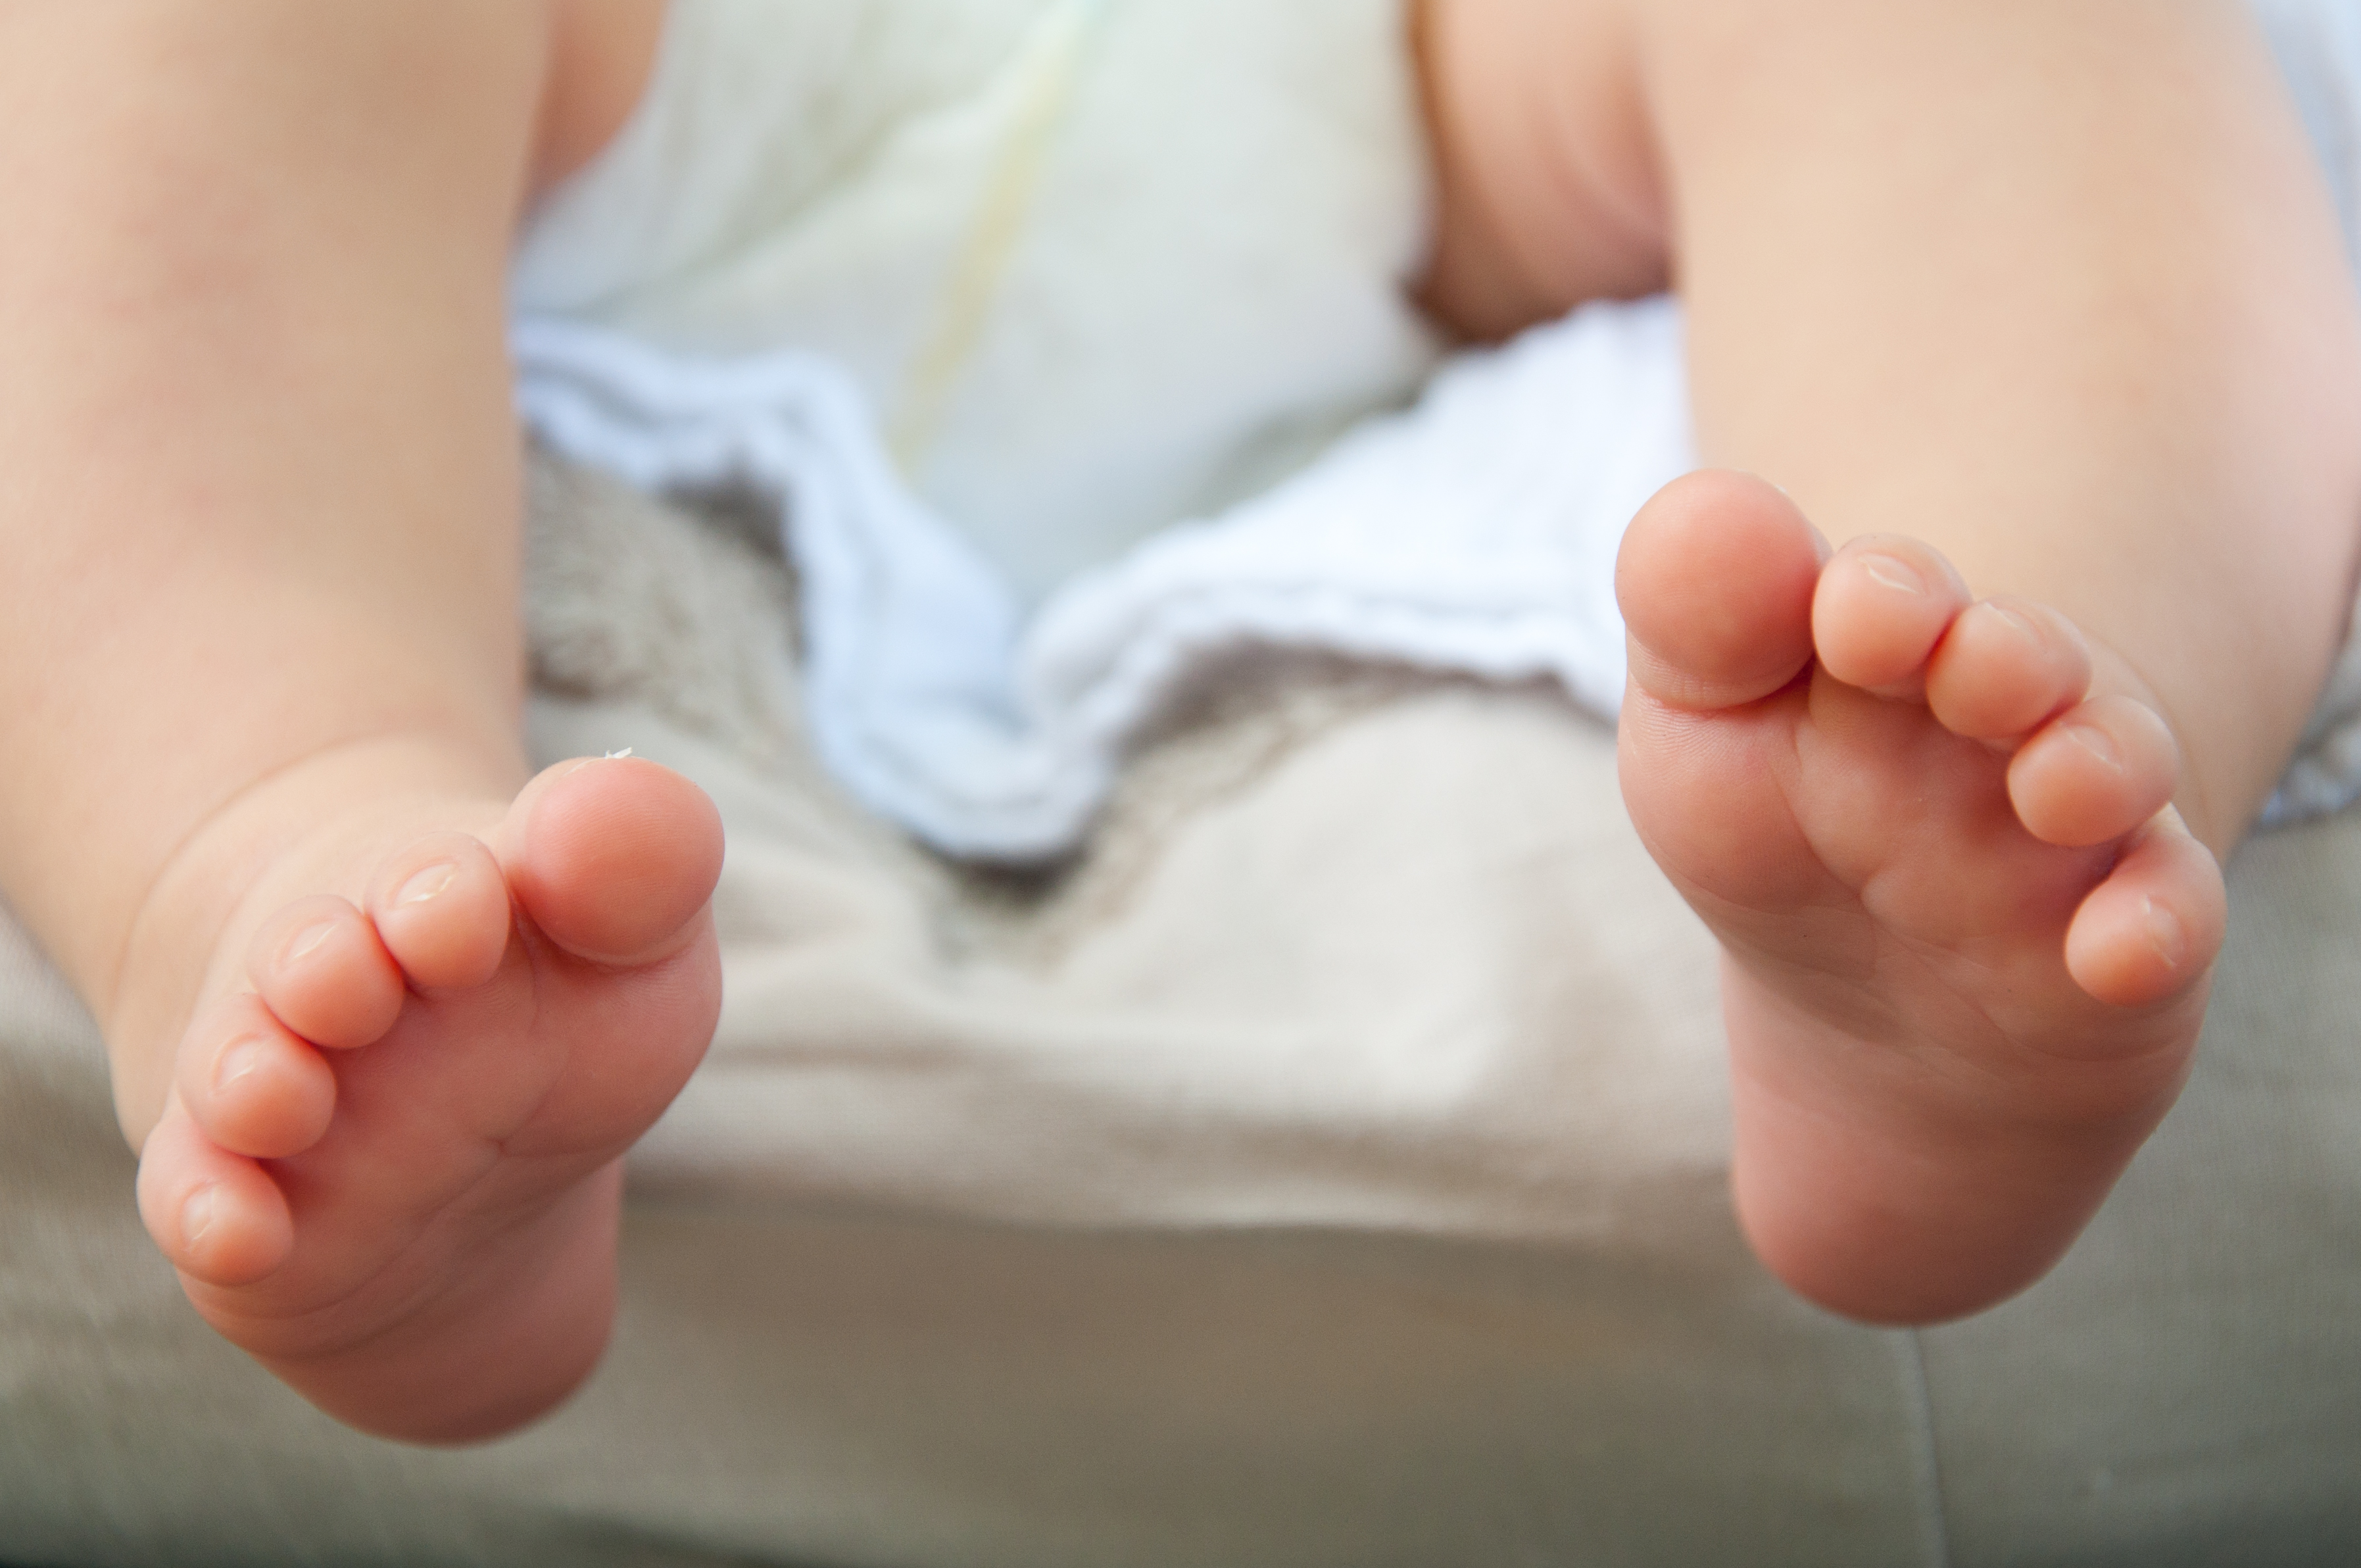 A close-up of tiny baby feet photo